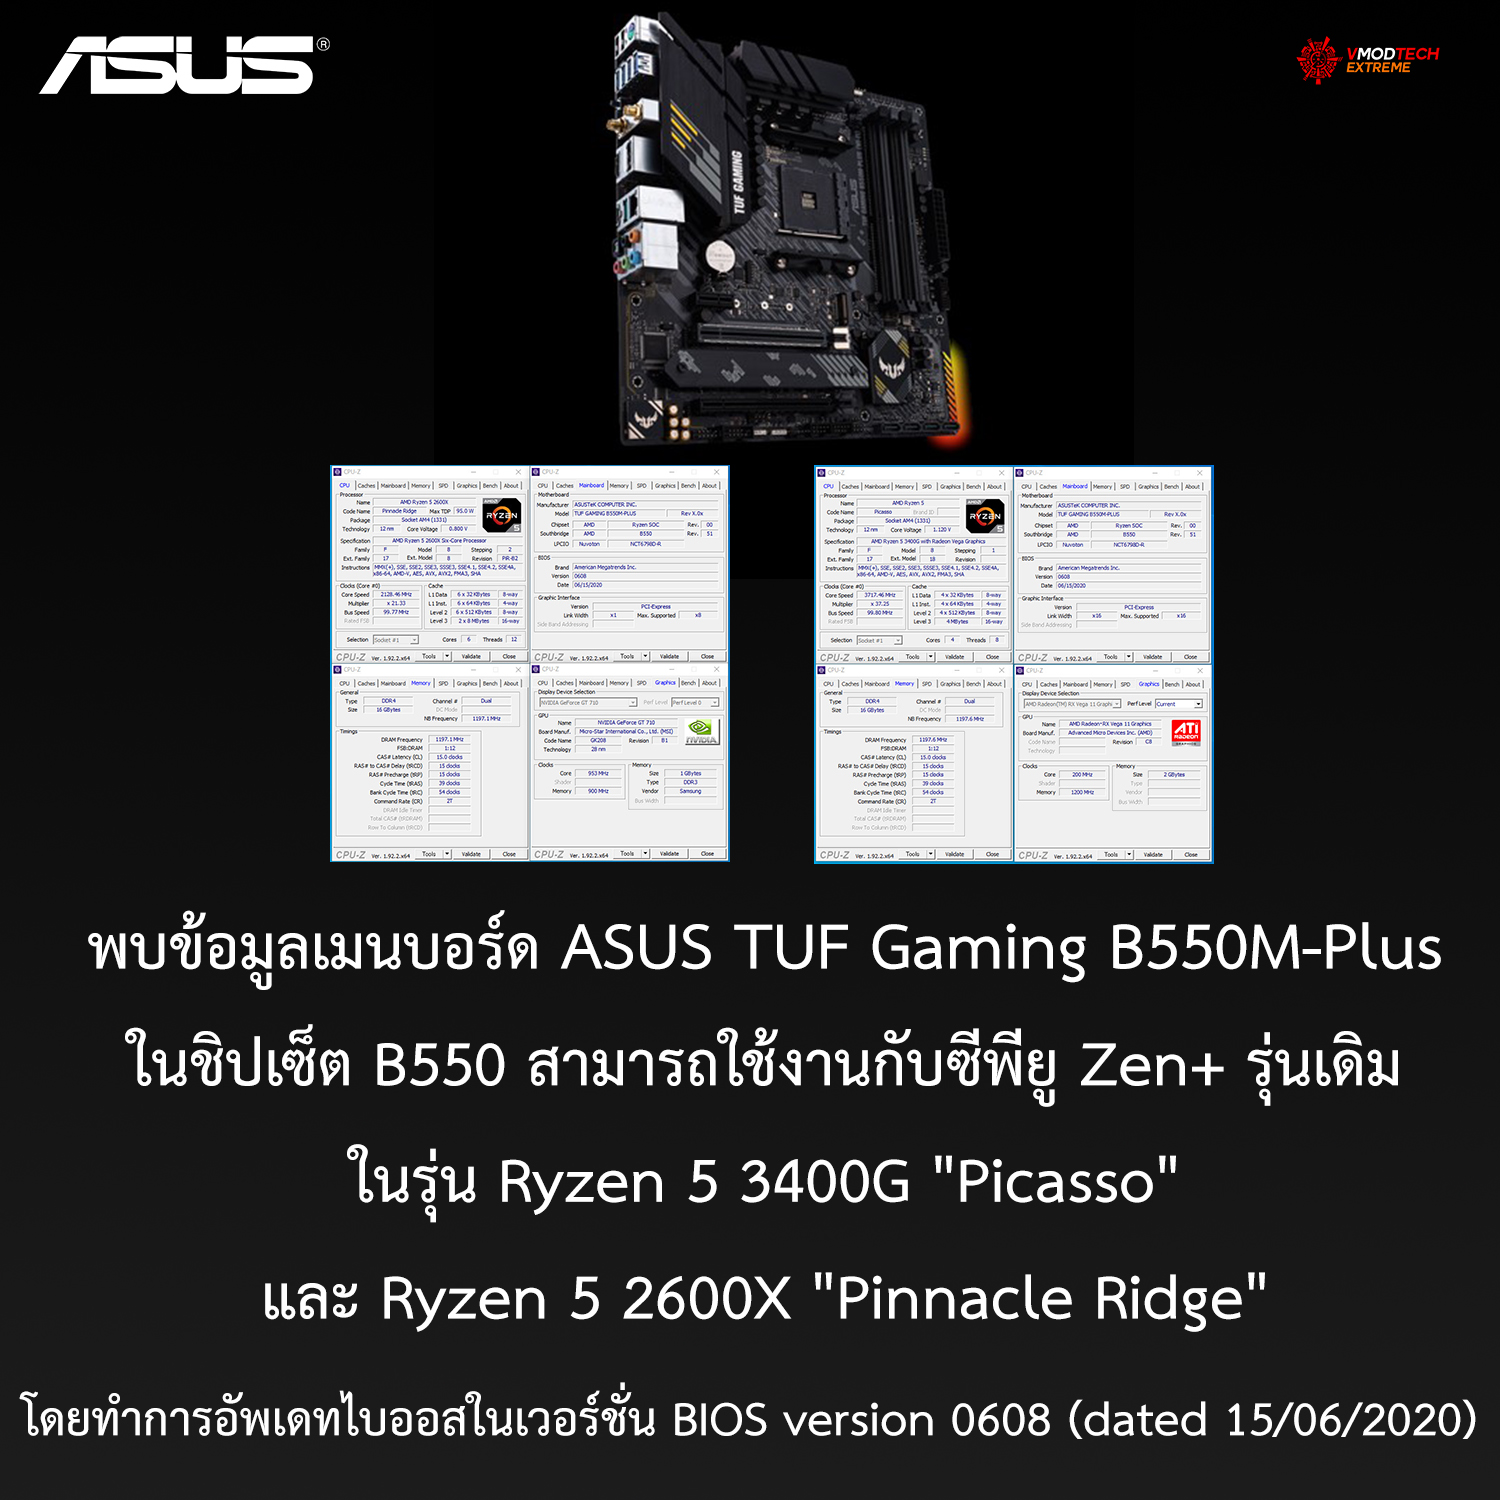 พบข้อมูลเมนบอร์ด AMD B550 สามารถใช้งานกับซีพียู Zen+ ในรุ่น Ryzen 5 3400G 